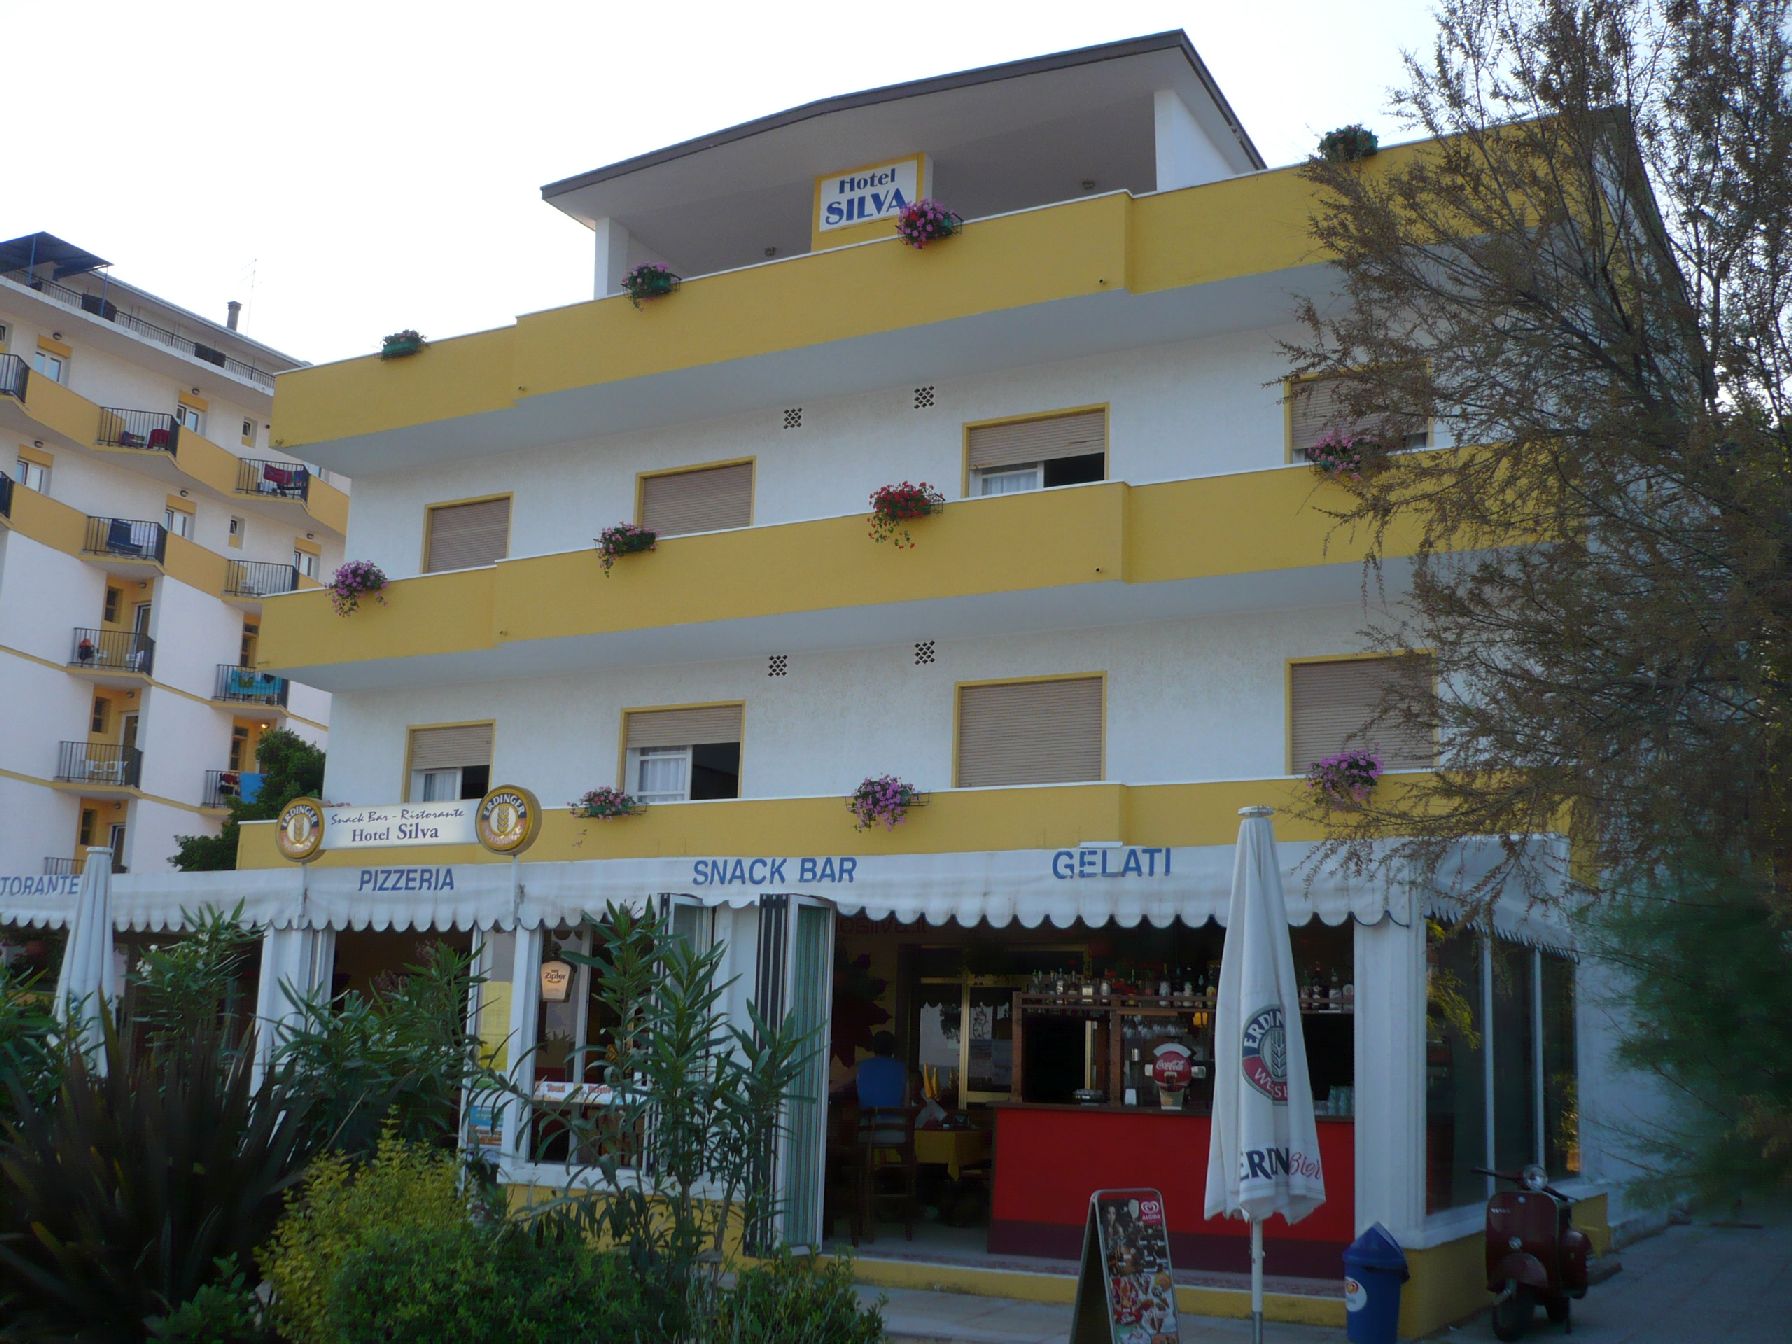 Hotel Silva in Jesolo Lido